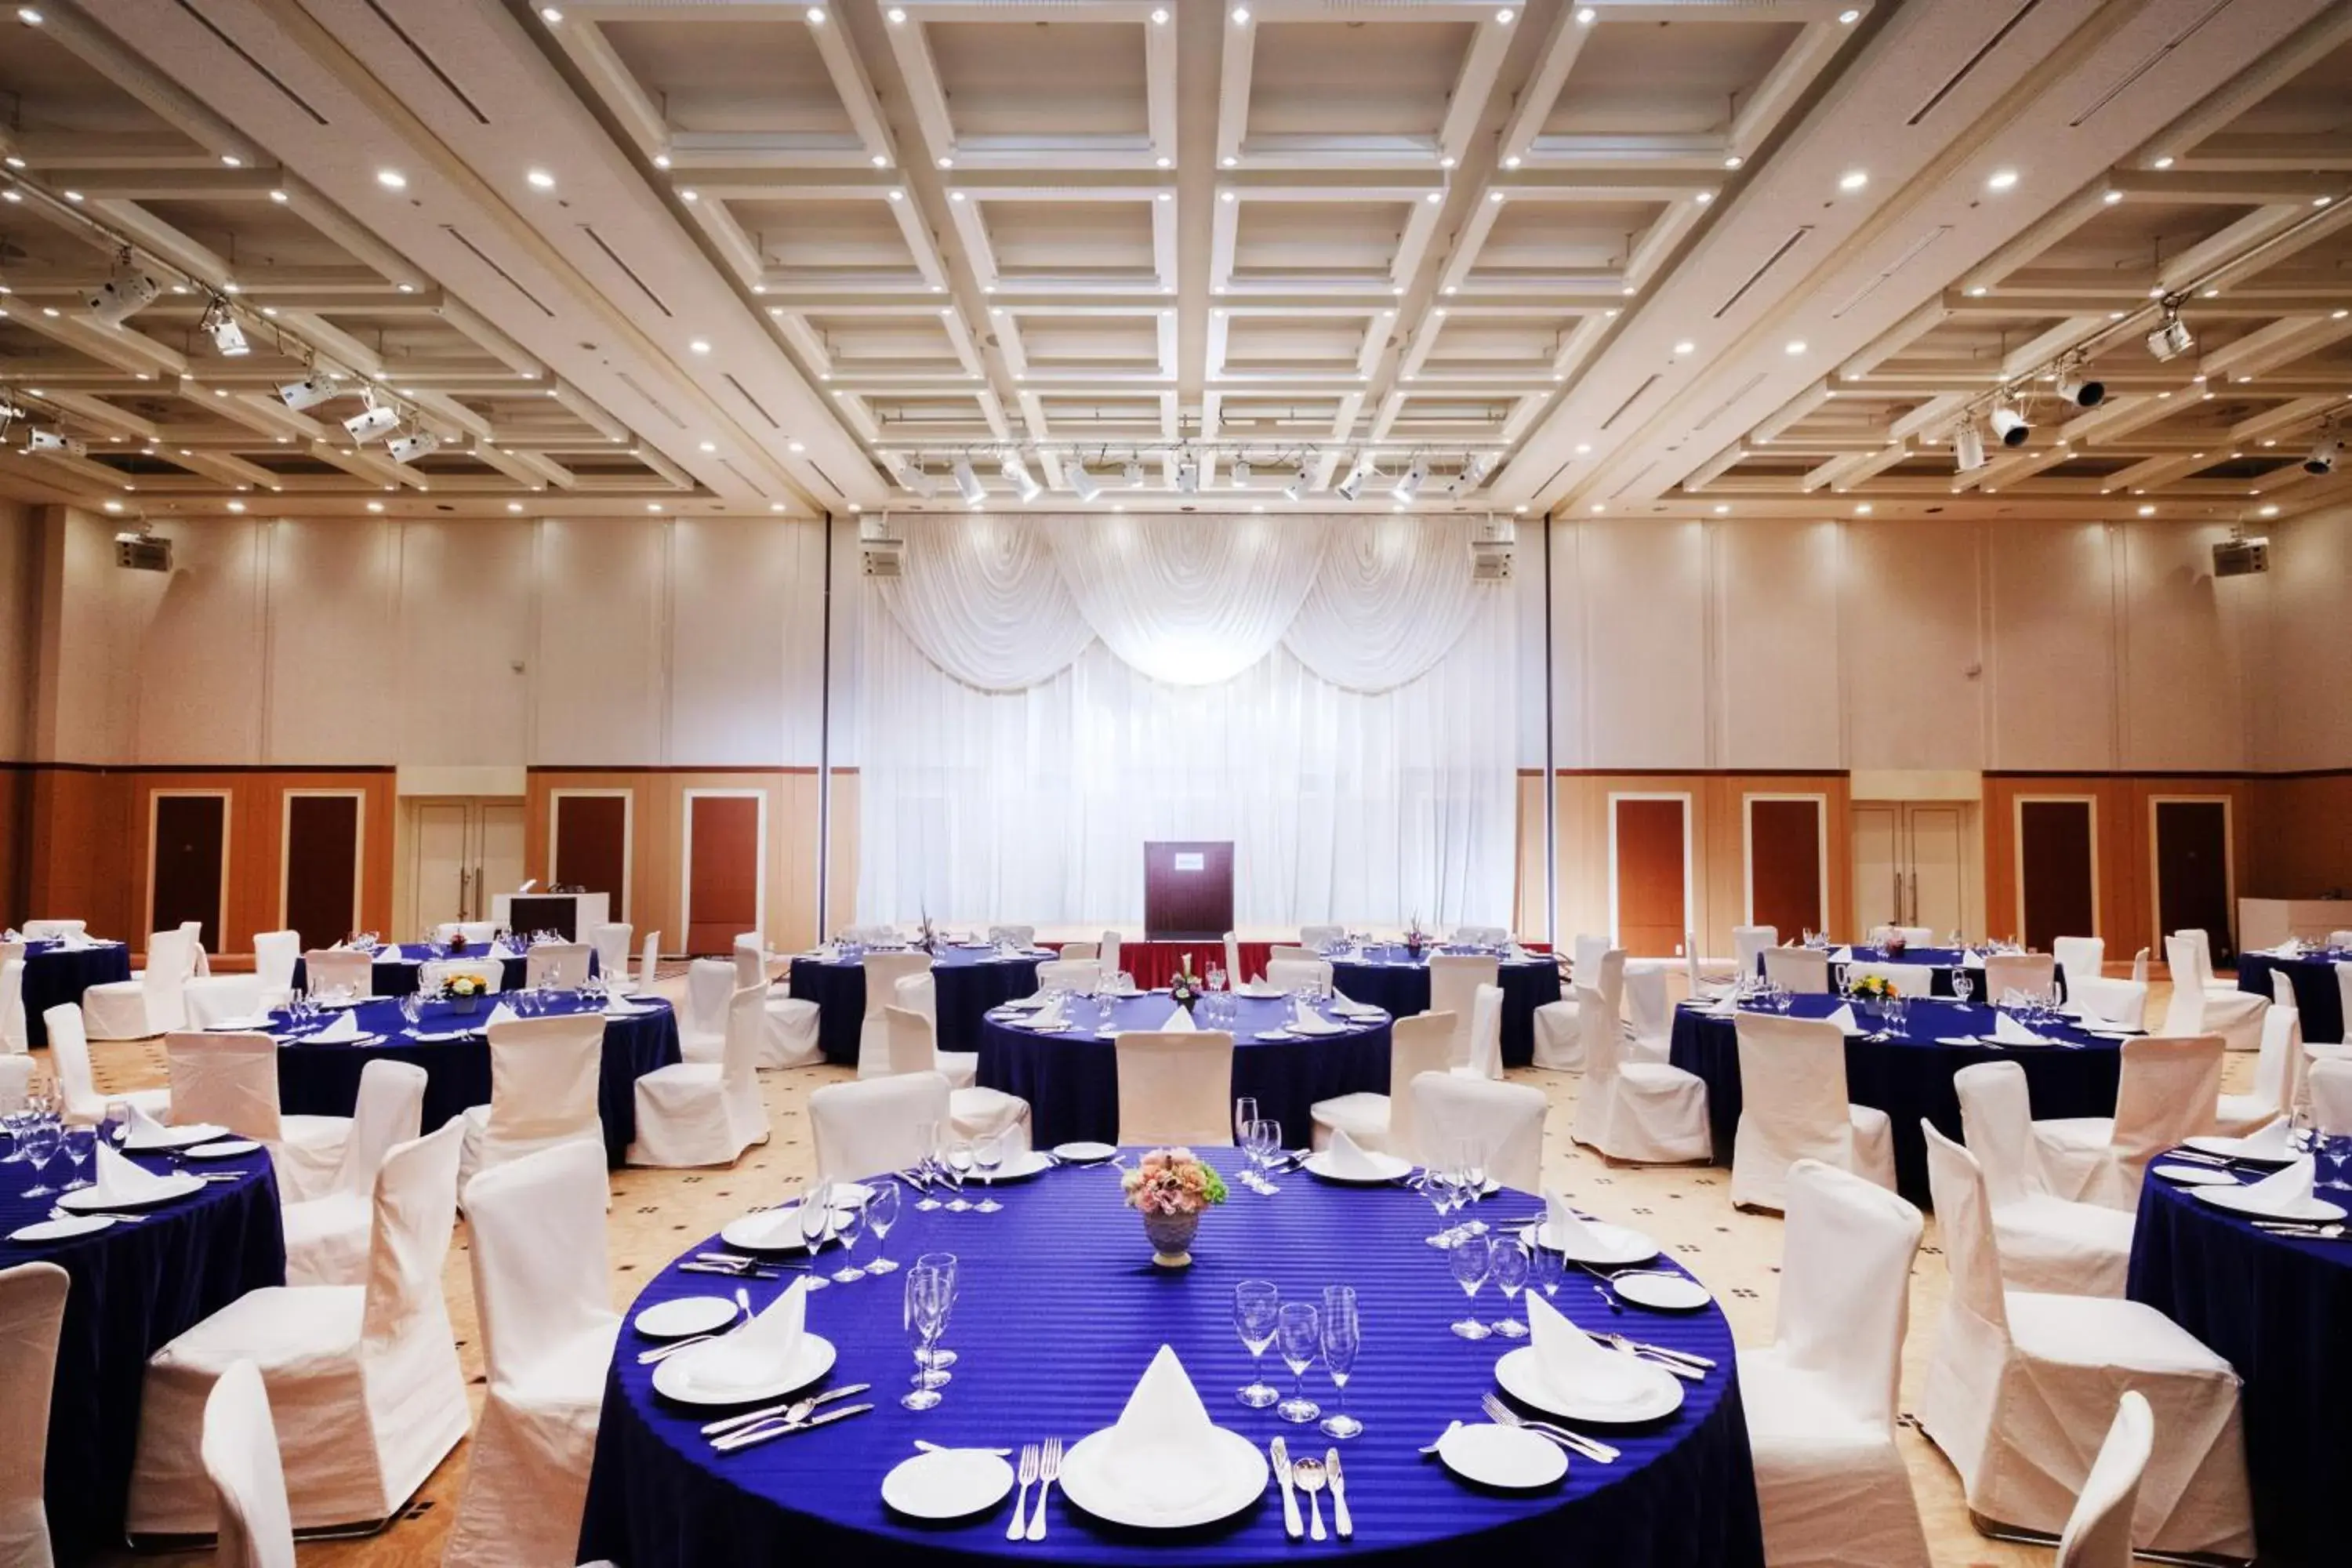 Banquet/Function facilities, Banquet Facilities in Mercure Hotel Yokosuka